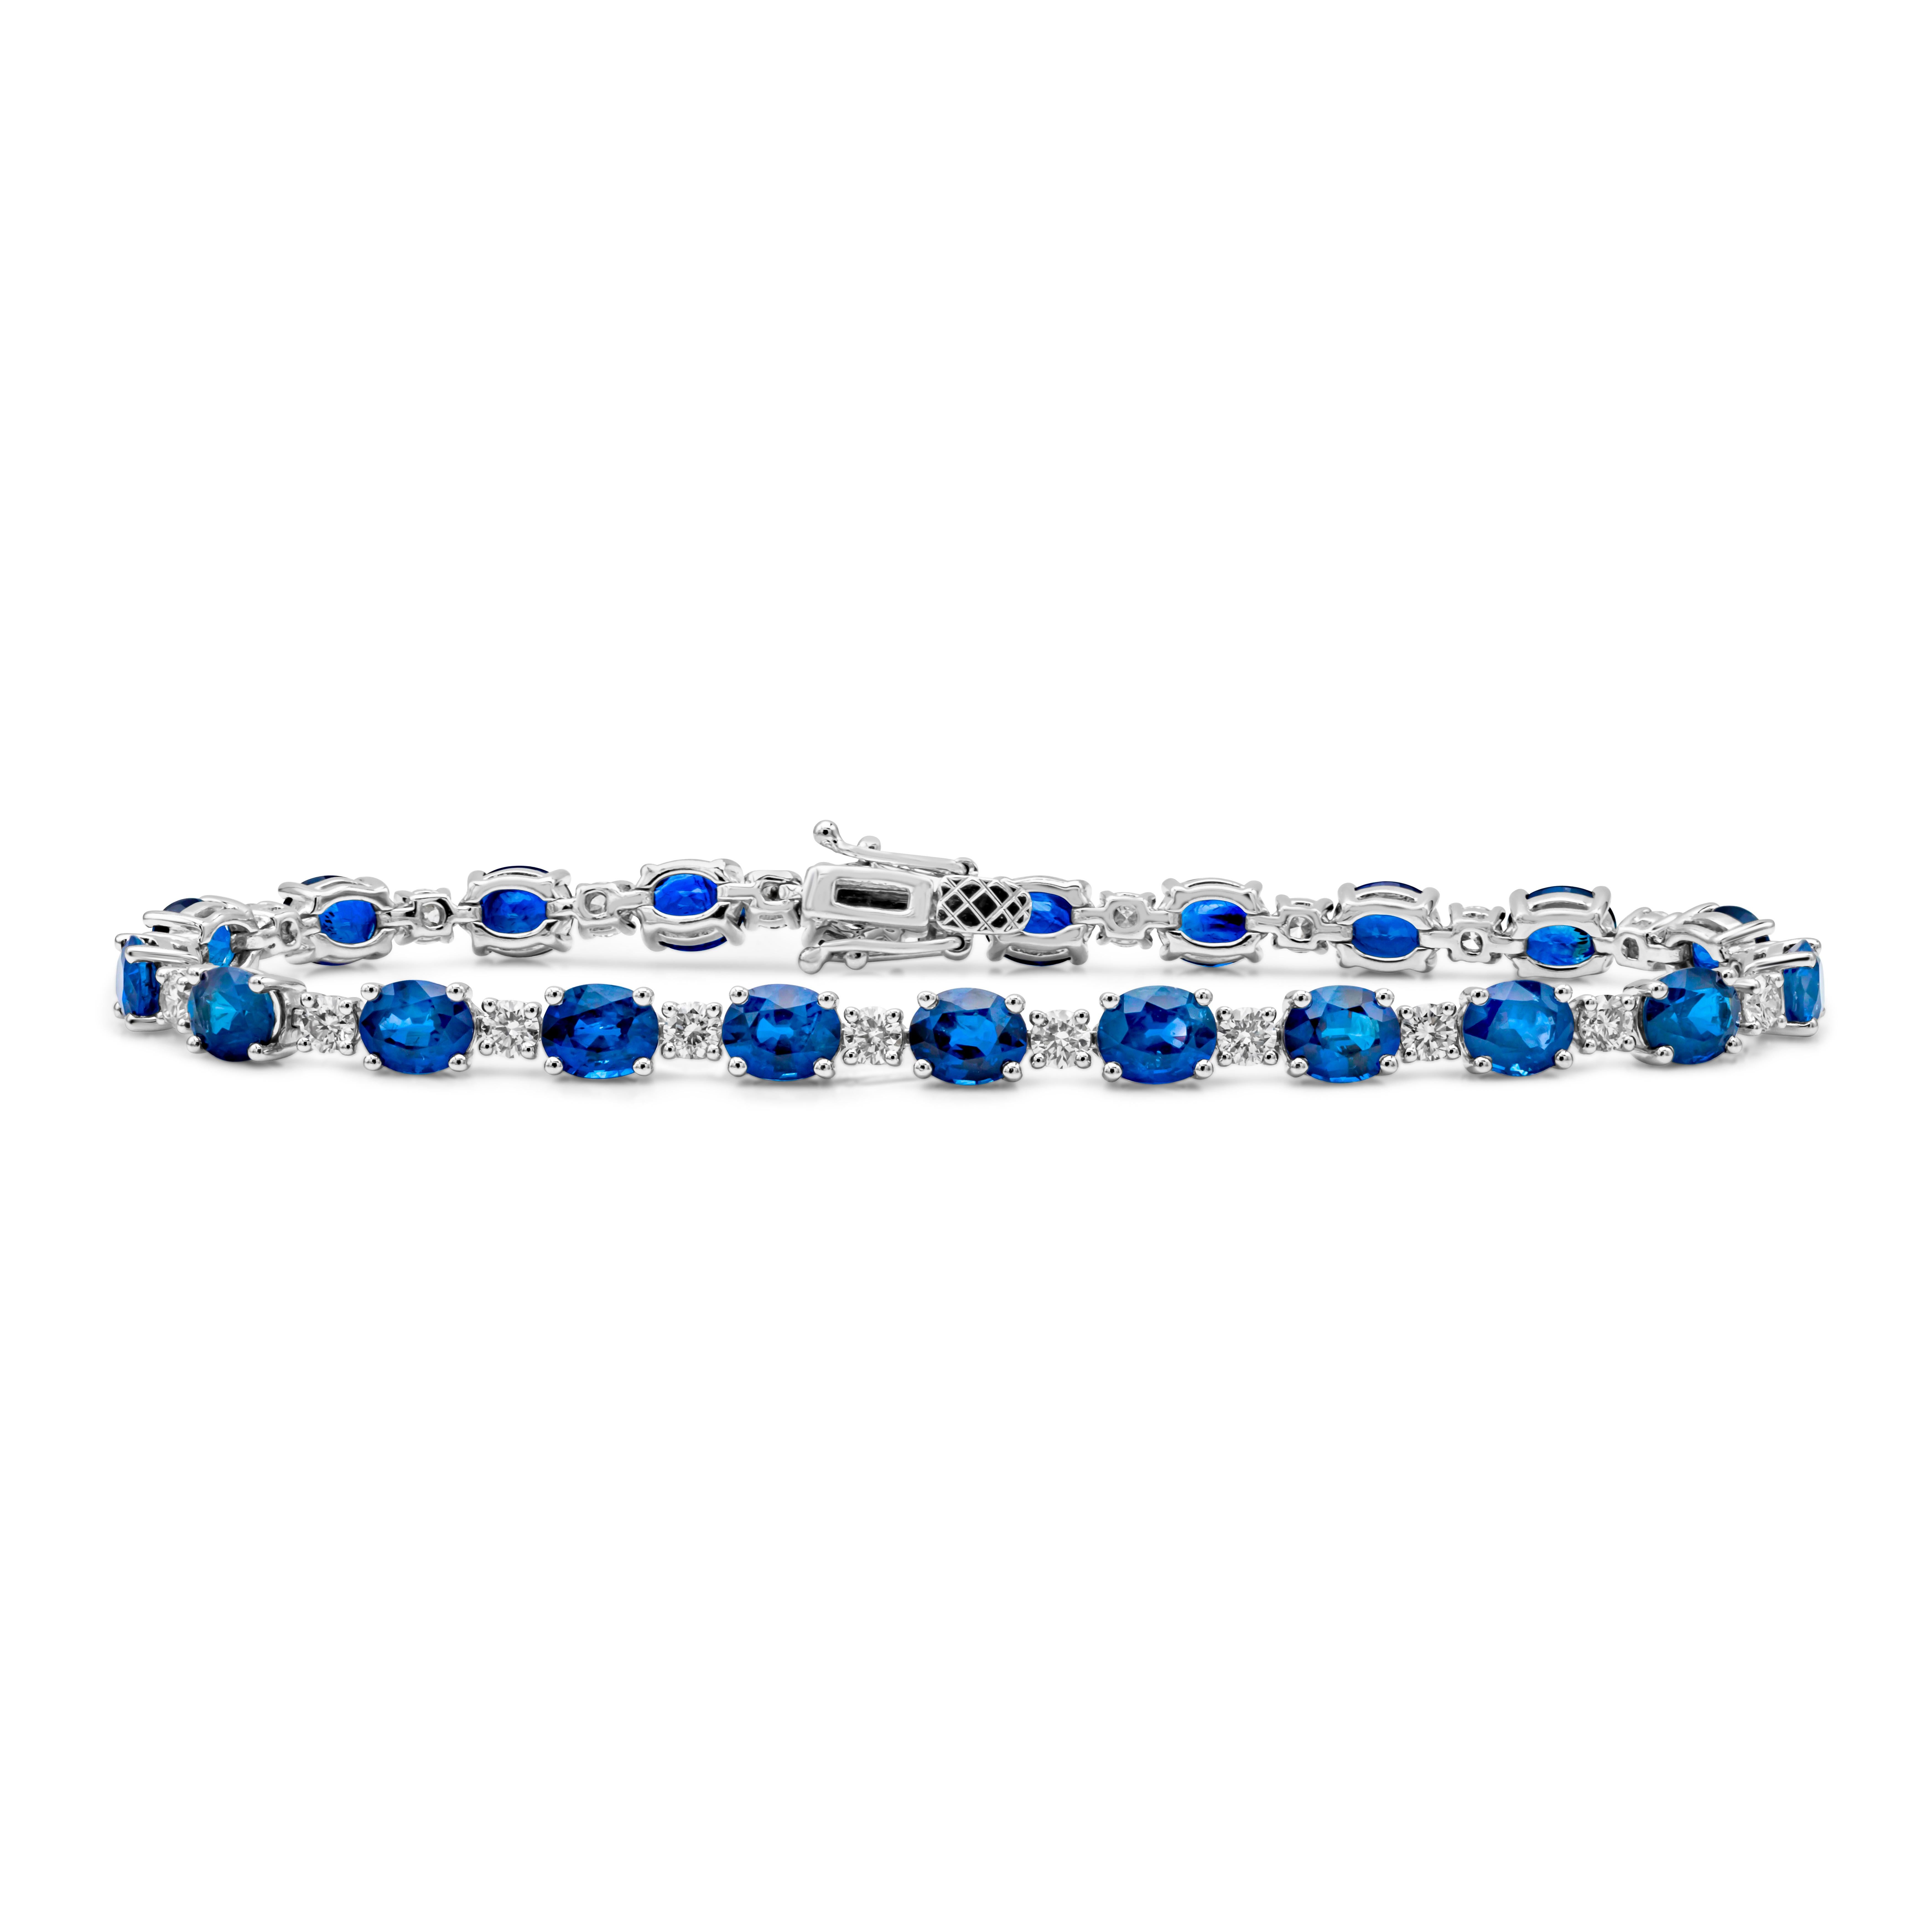 Dieses wunderschöne Tennisarmband präsentiert einen farbenprächtigen blauen Saphir im Ovalschliff mit einem Gesamtgewicht von 12,56 Karat, der in einer klassischen Vier-Zacken-Fassung gefasst ist. In gleichmäßigen Abständen befinden sich runde